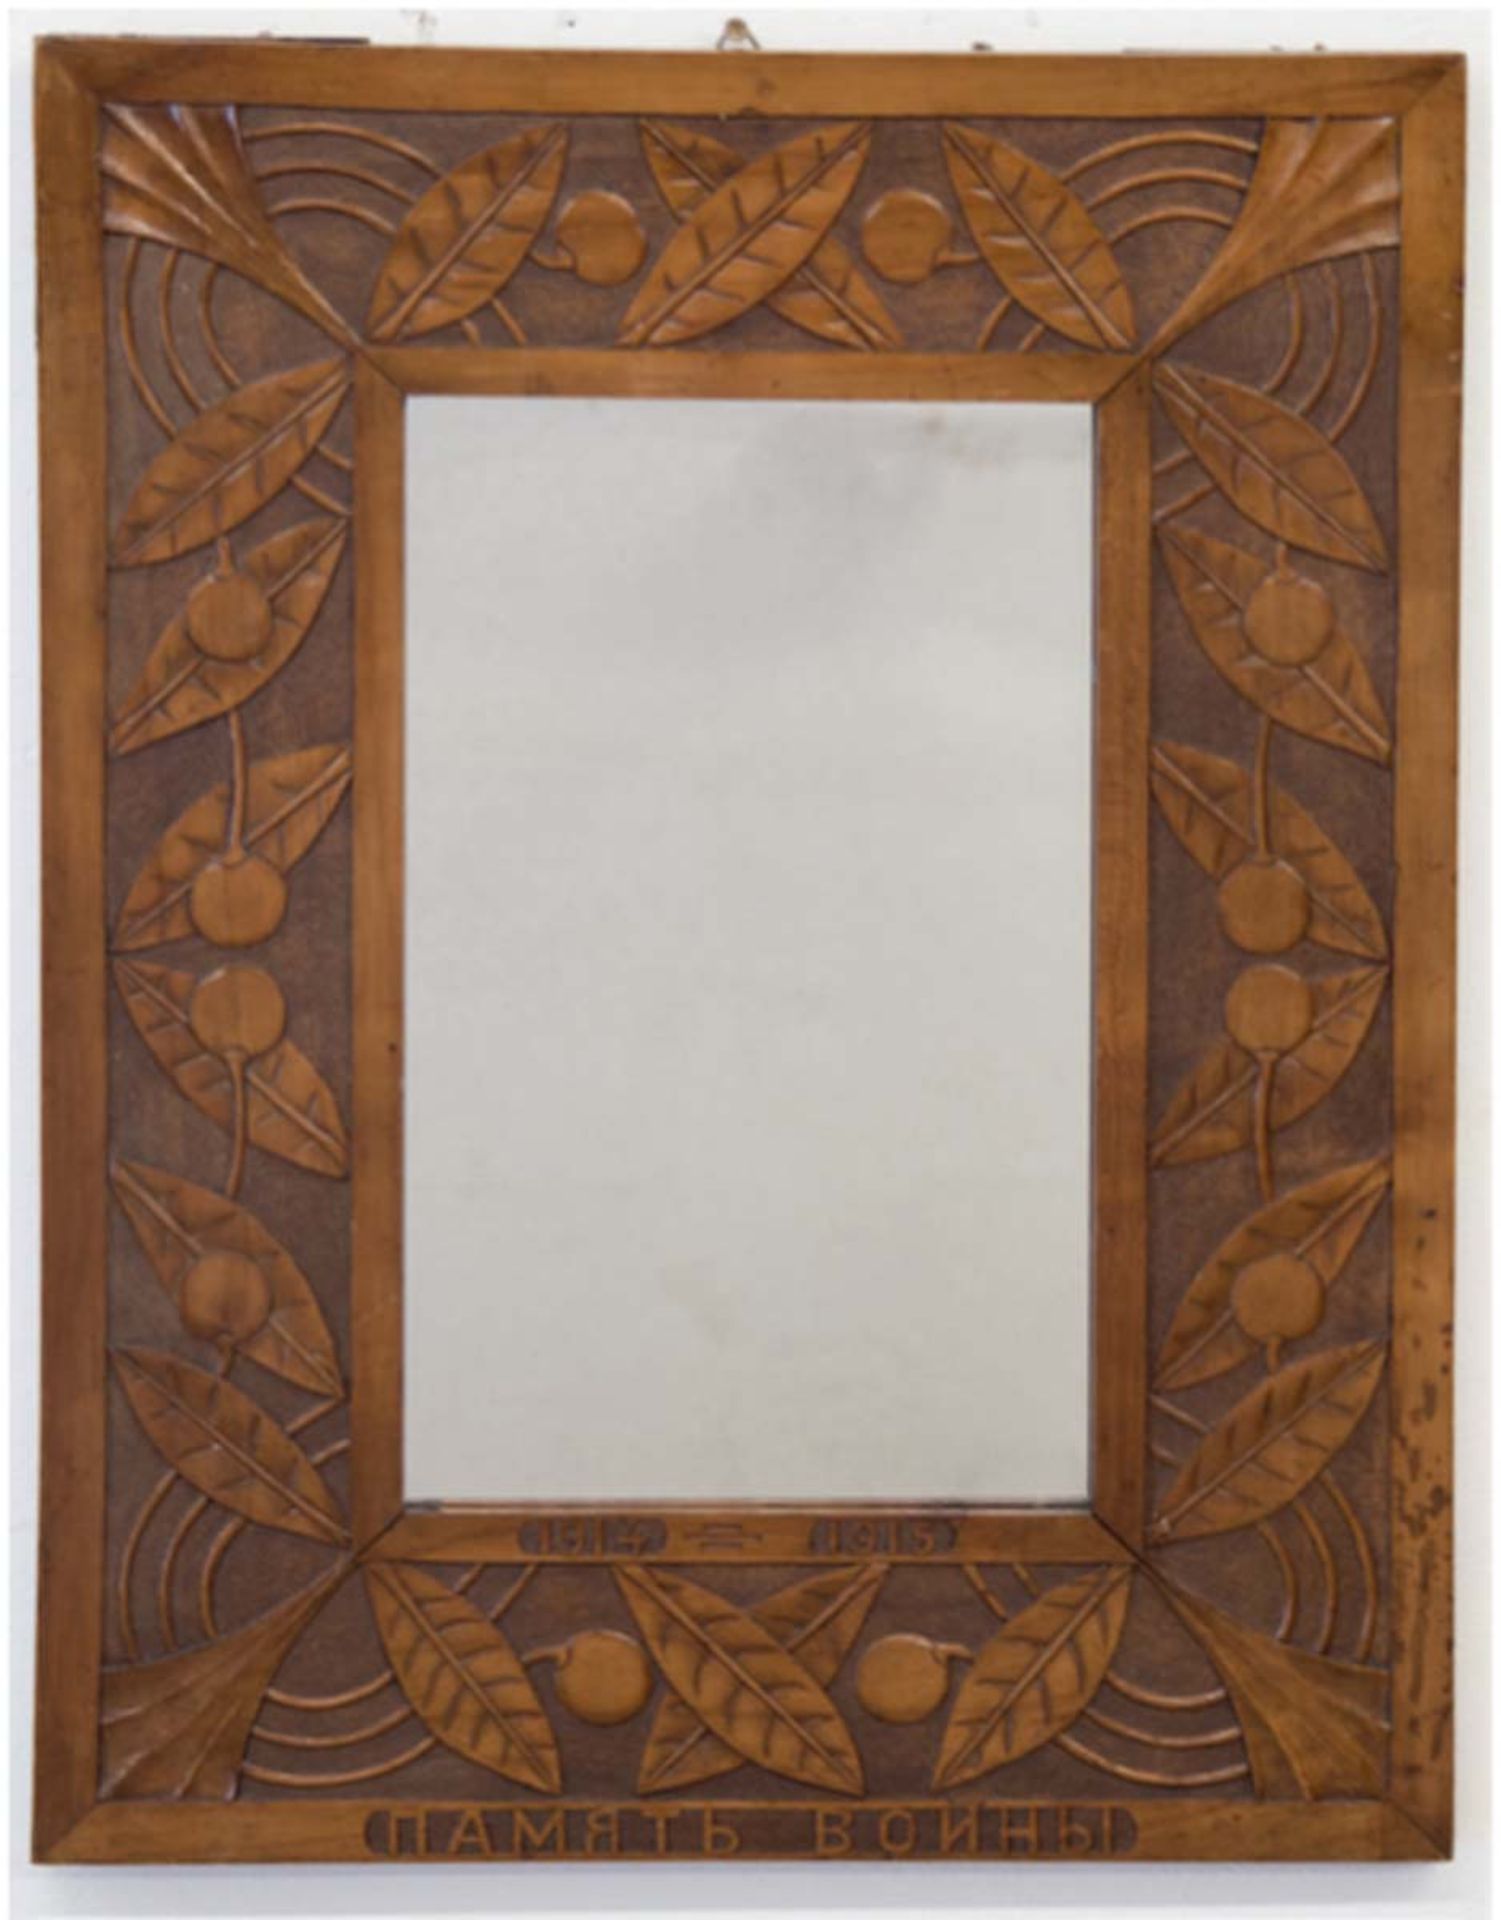 Spiegel im dekorativen Holzrahmen, beschnitzt mit Blattrelief und kyrillischer Inschrift"I.